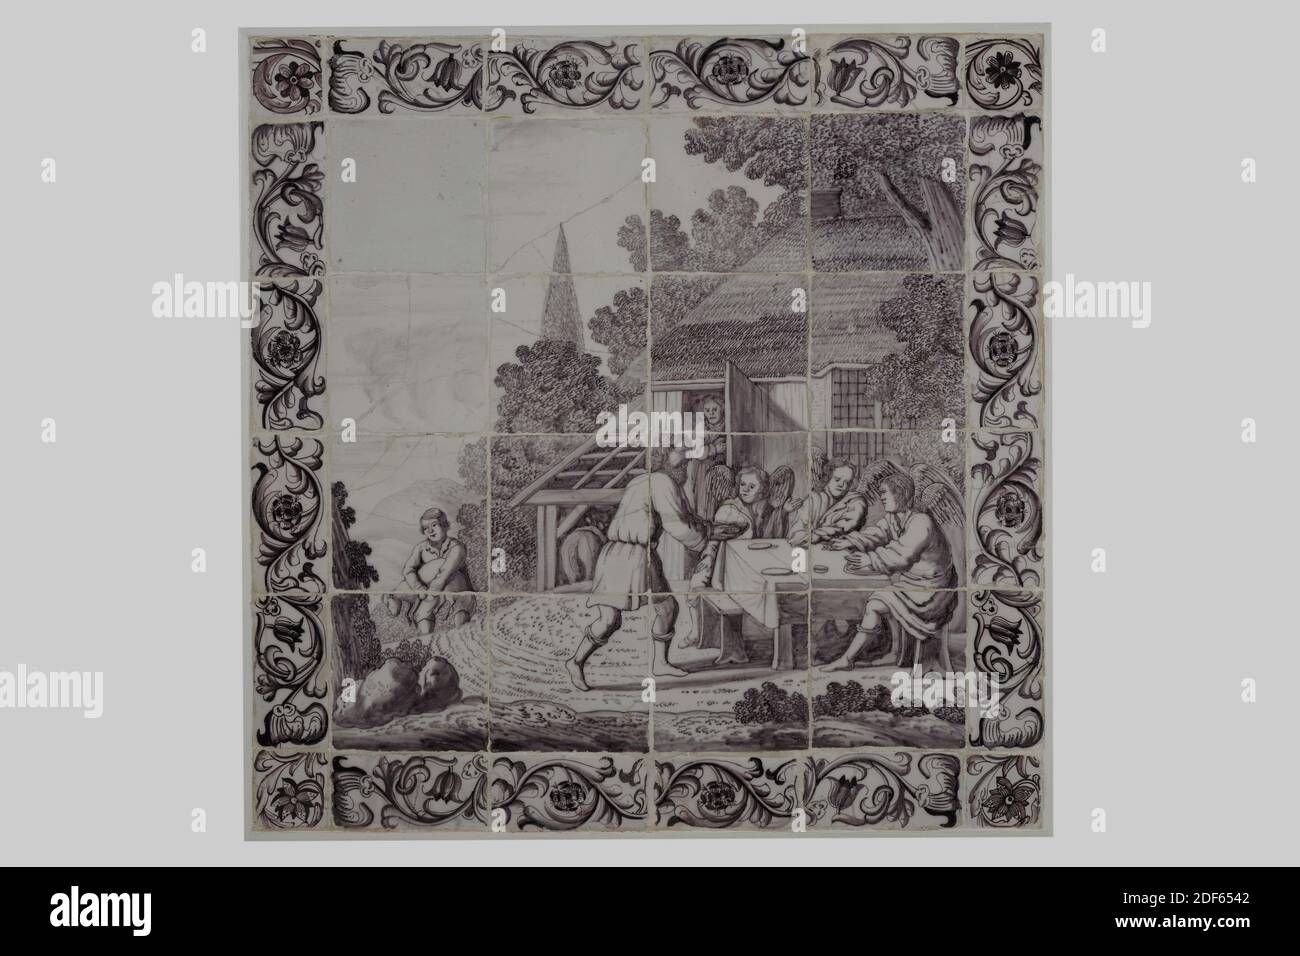 Panneau de tuiles, tableau: Entre 1690-1730, bord: 18e siècle, glaçure d'étain, faïence, avec cadre: 67.5 x 66 x 3.5cm (675 x 660 x 35mm), ange, représentation biblique, rotterdam, panneau de carreaux de seize tuiles ( quatre par quatre) de faïence recouvert de glaçure d'étain et peint en violet. Le tableau montre une représentation biblique (Genèse 18: 1-3): Abraham salue les trois anges. Au premier plan Abraham est représenté debout par une table, dans ses bras il tient un bol de nourriture. Derrière la table se trouvent trois anges ailés. Sara est debout derrière eux dans la porte d'une maison. Dans l'arrière-plan gauche a Banque D'Images